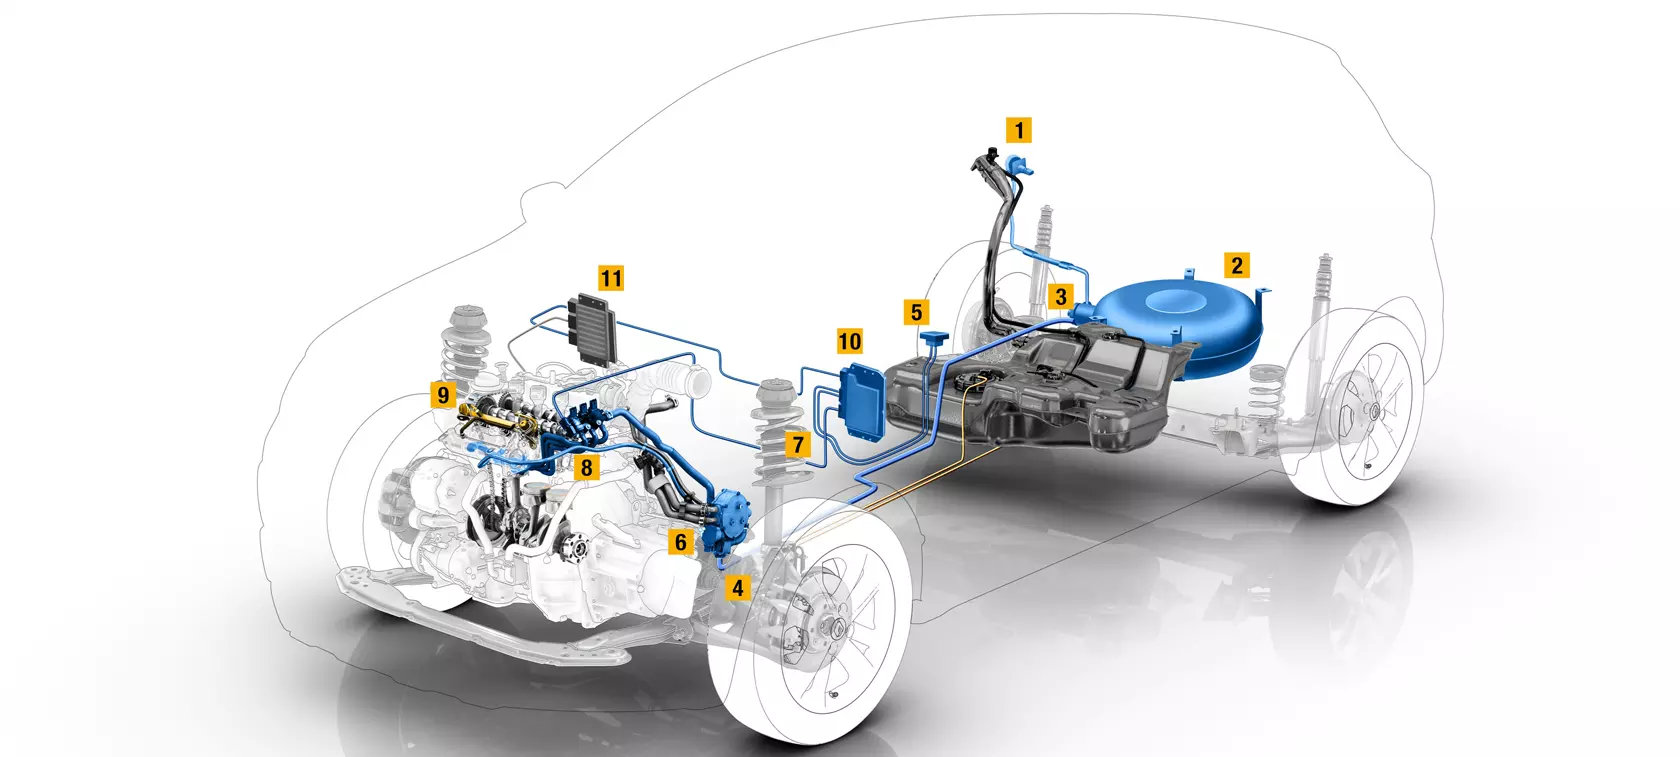 Renault builds dedicated LPG engine